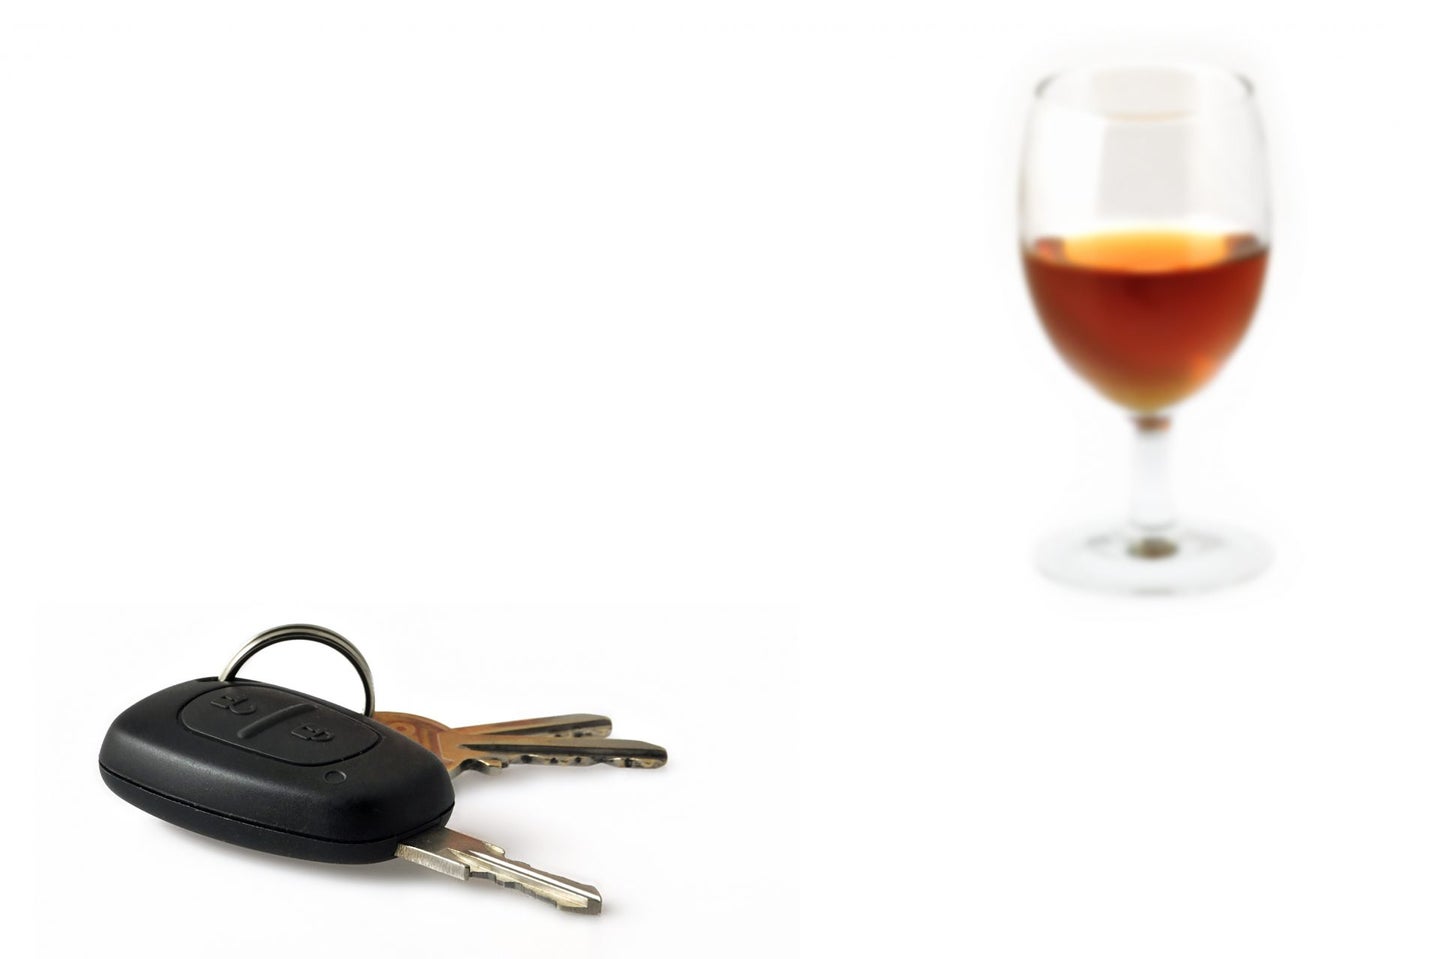 Drive-Thrus Top Drunk-Driving Destination: Survey